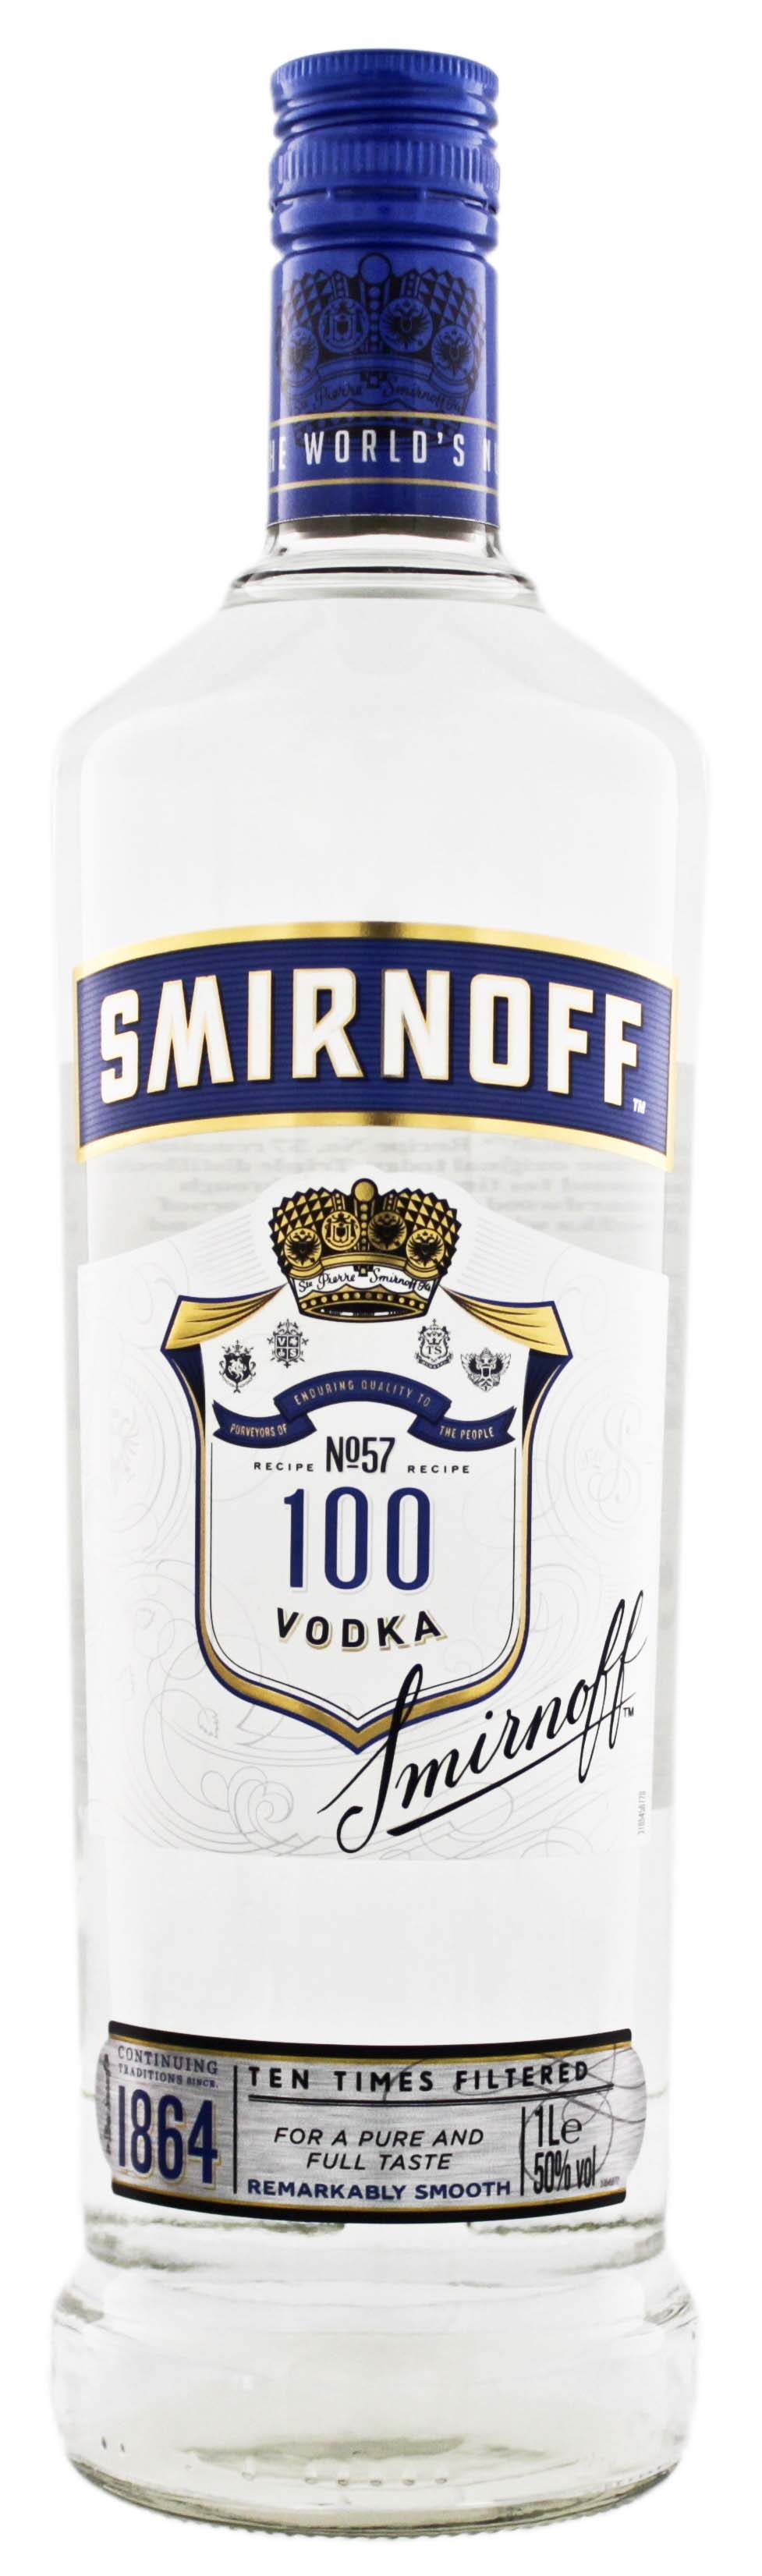 Smirnoff Vodka Blue Label jetzt kaufen! Wodka Online Shop & Spirituosen